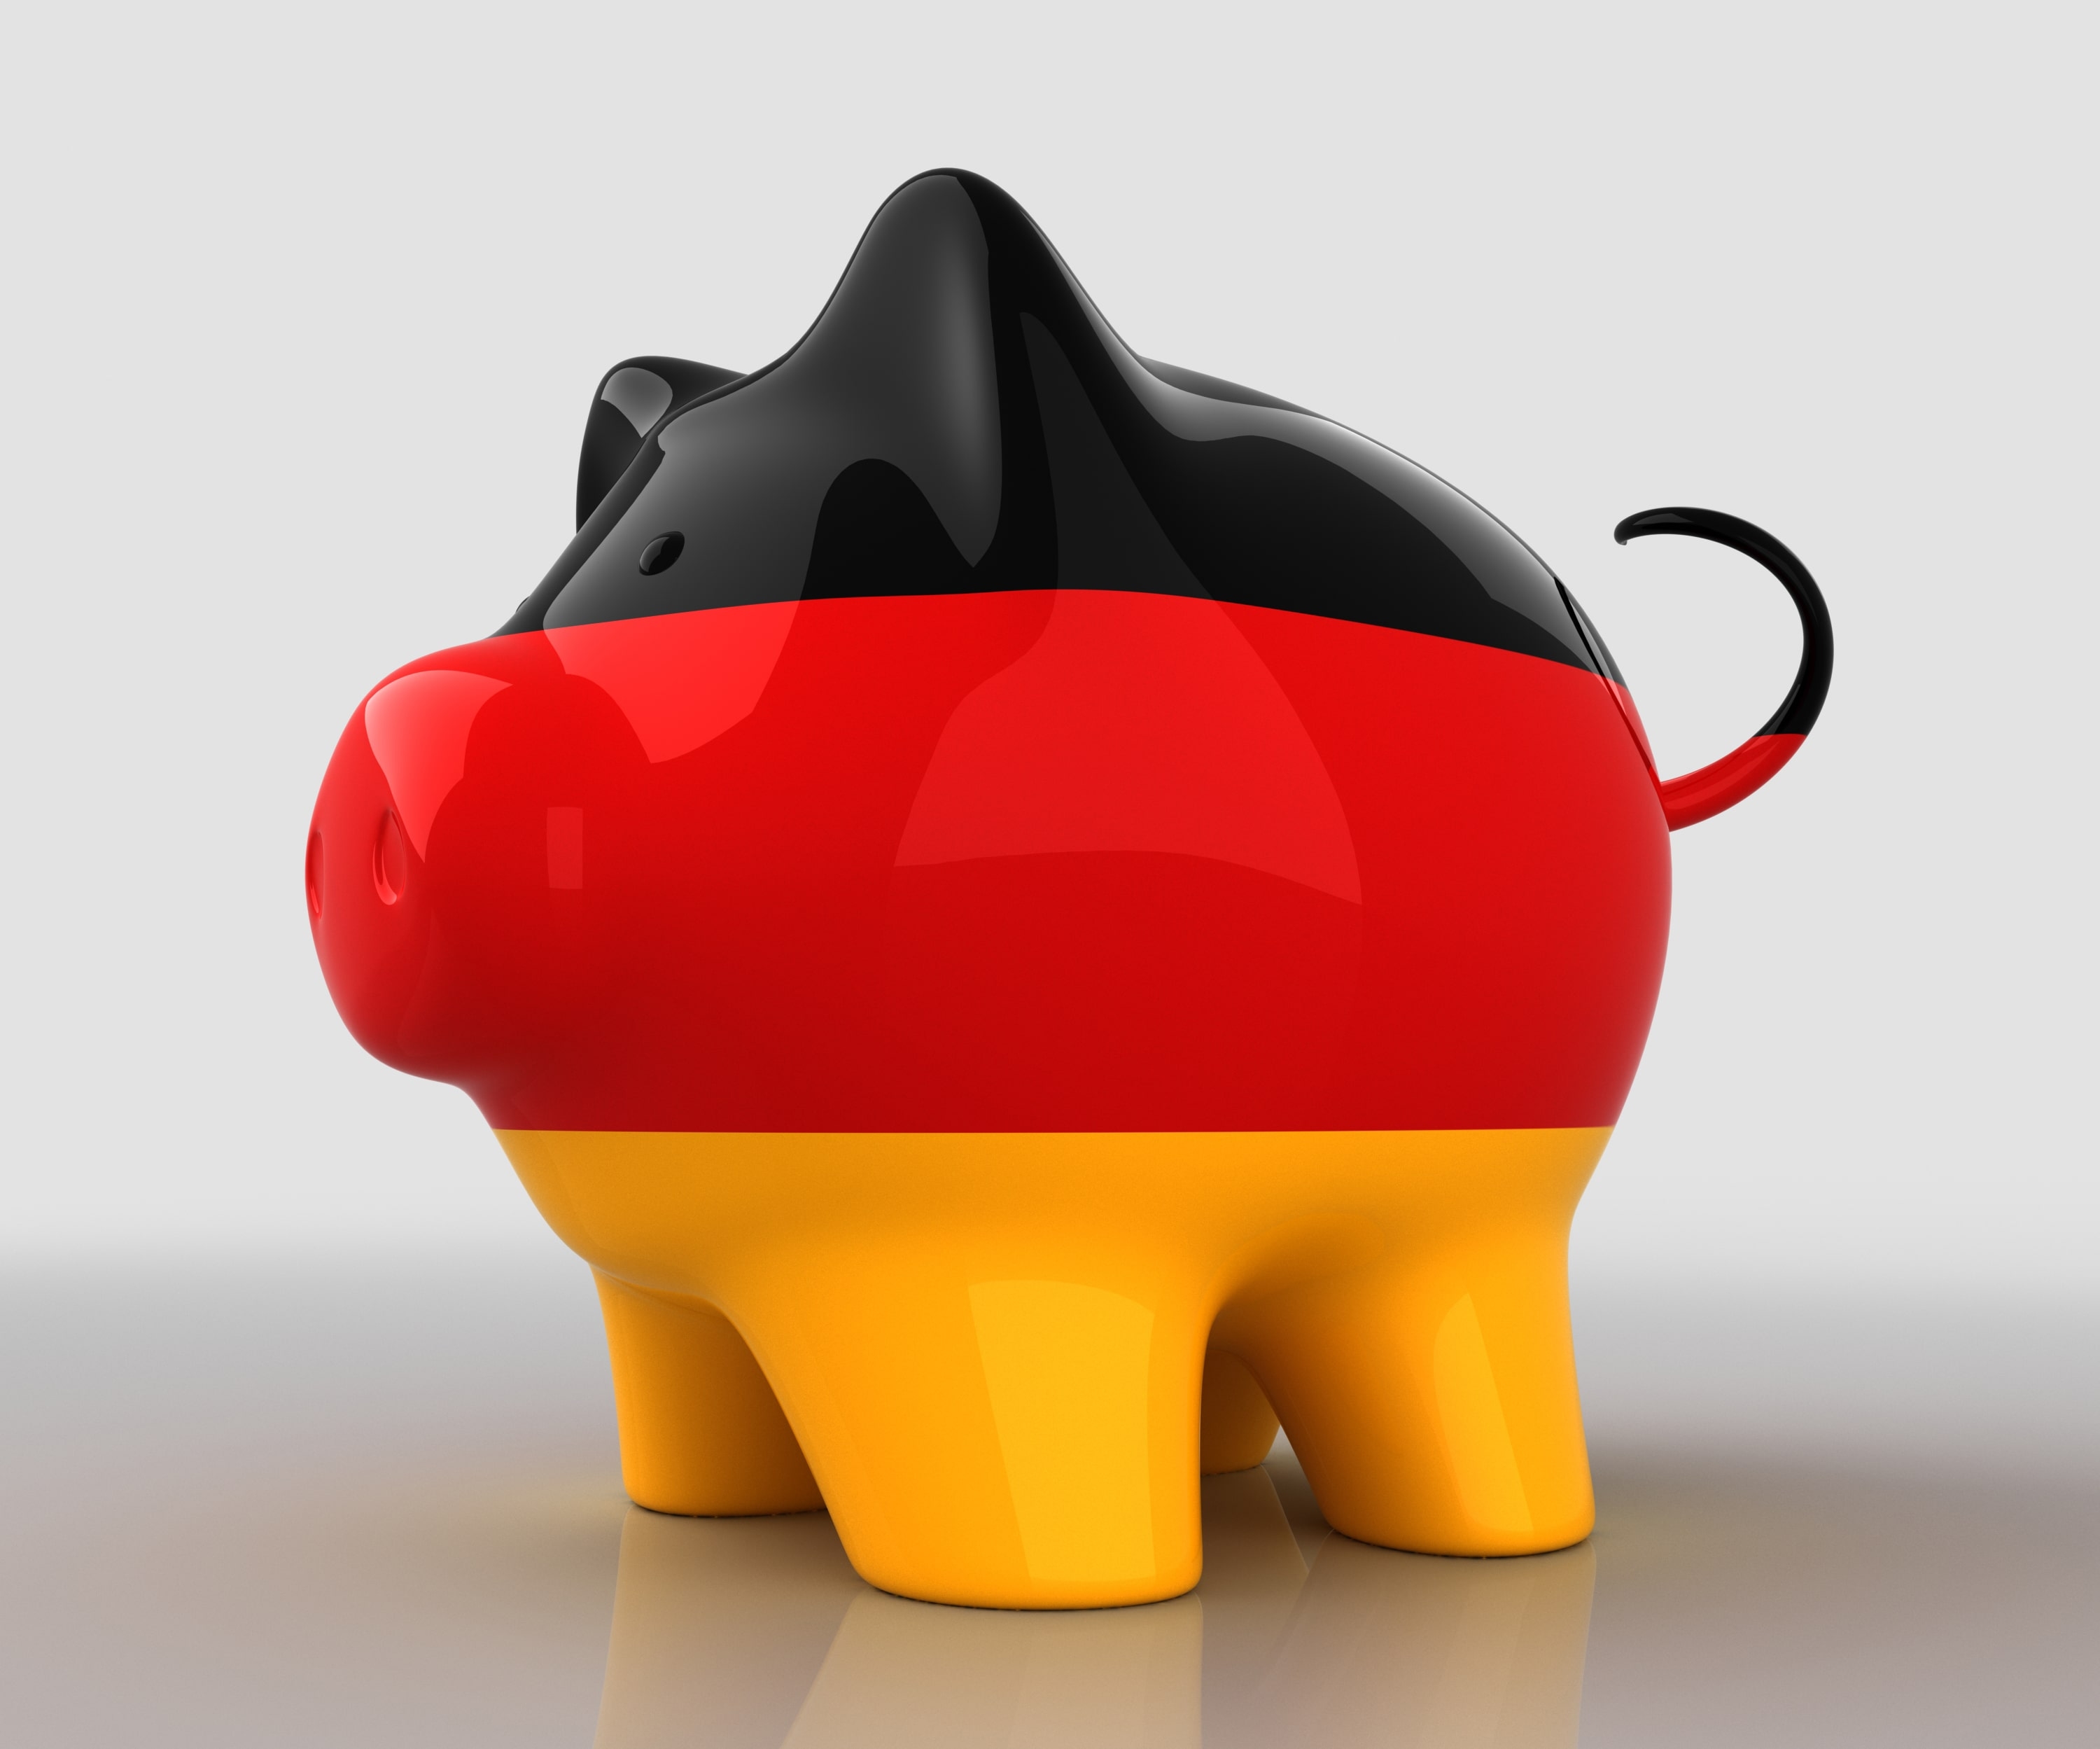 Clienții Taxback primesc o suma medie de aproximativ €5,410 din Germania când returnează contribuția la pensie.